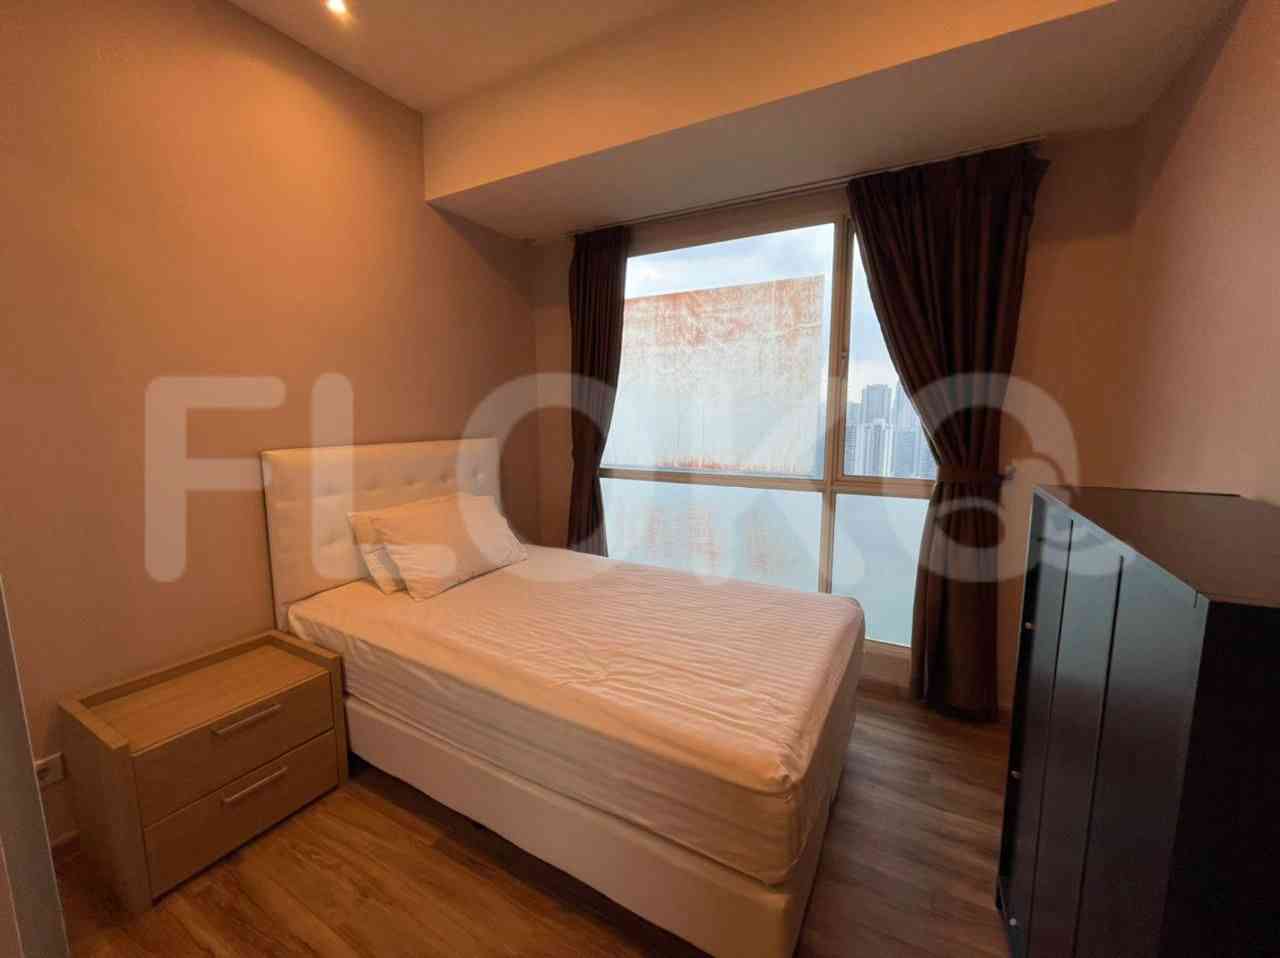 3 Bedroom on 17th Floor for Rent in Casa Grande - ftefa9 6